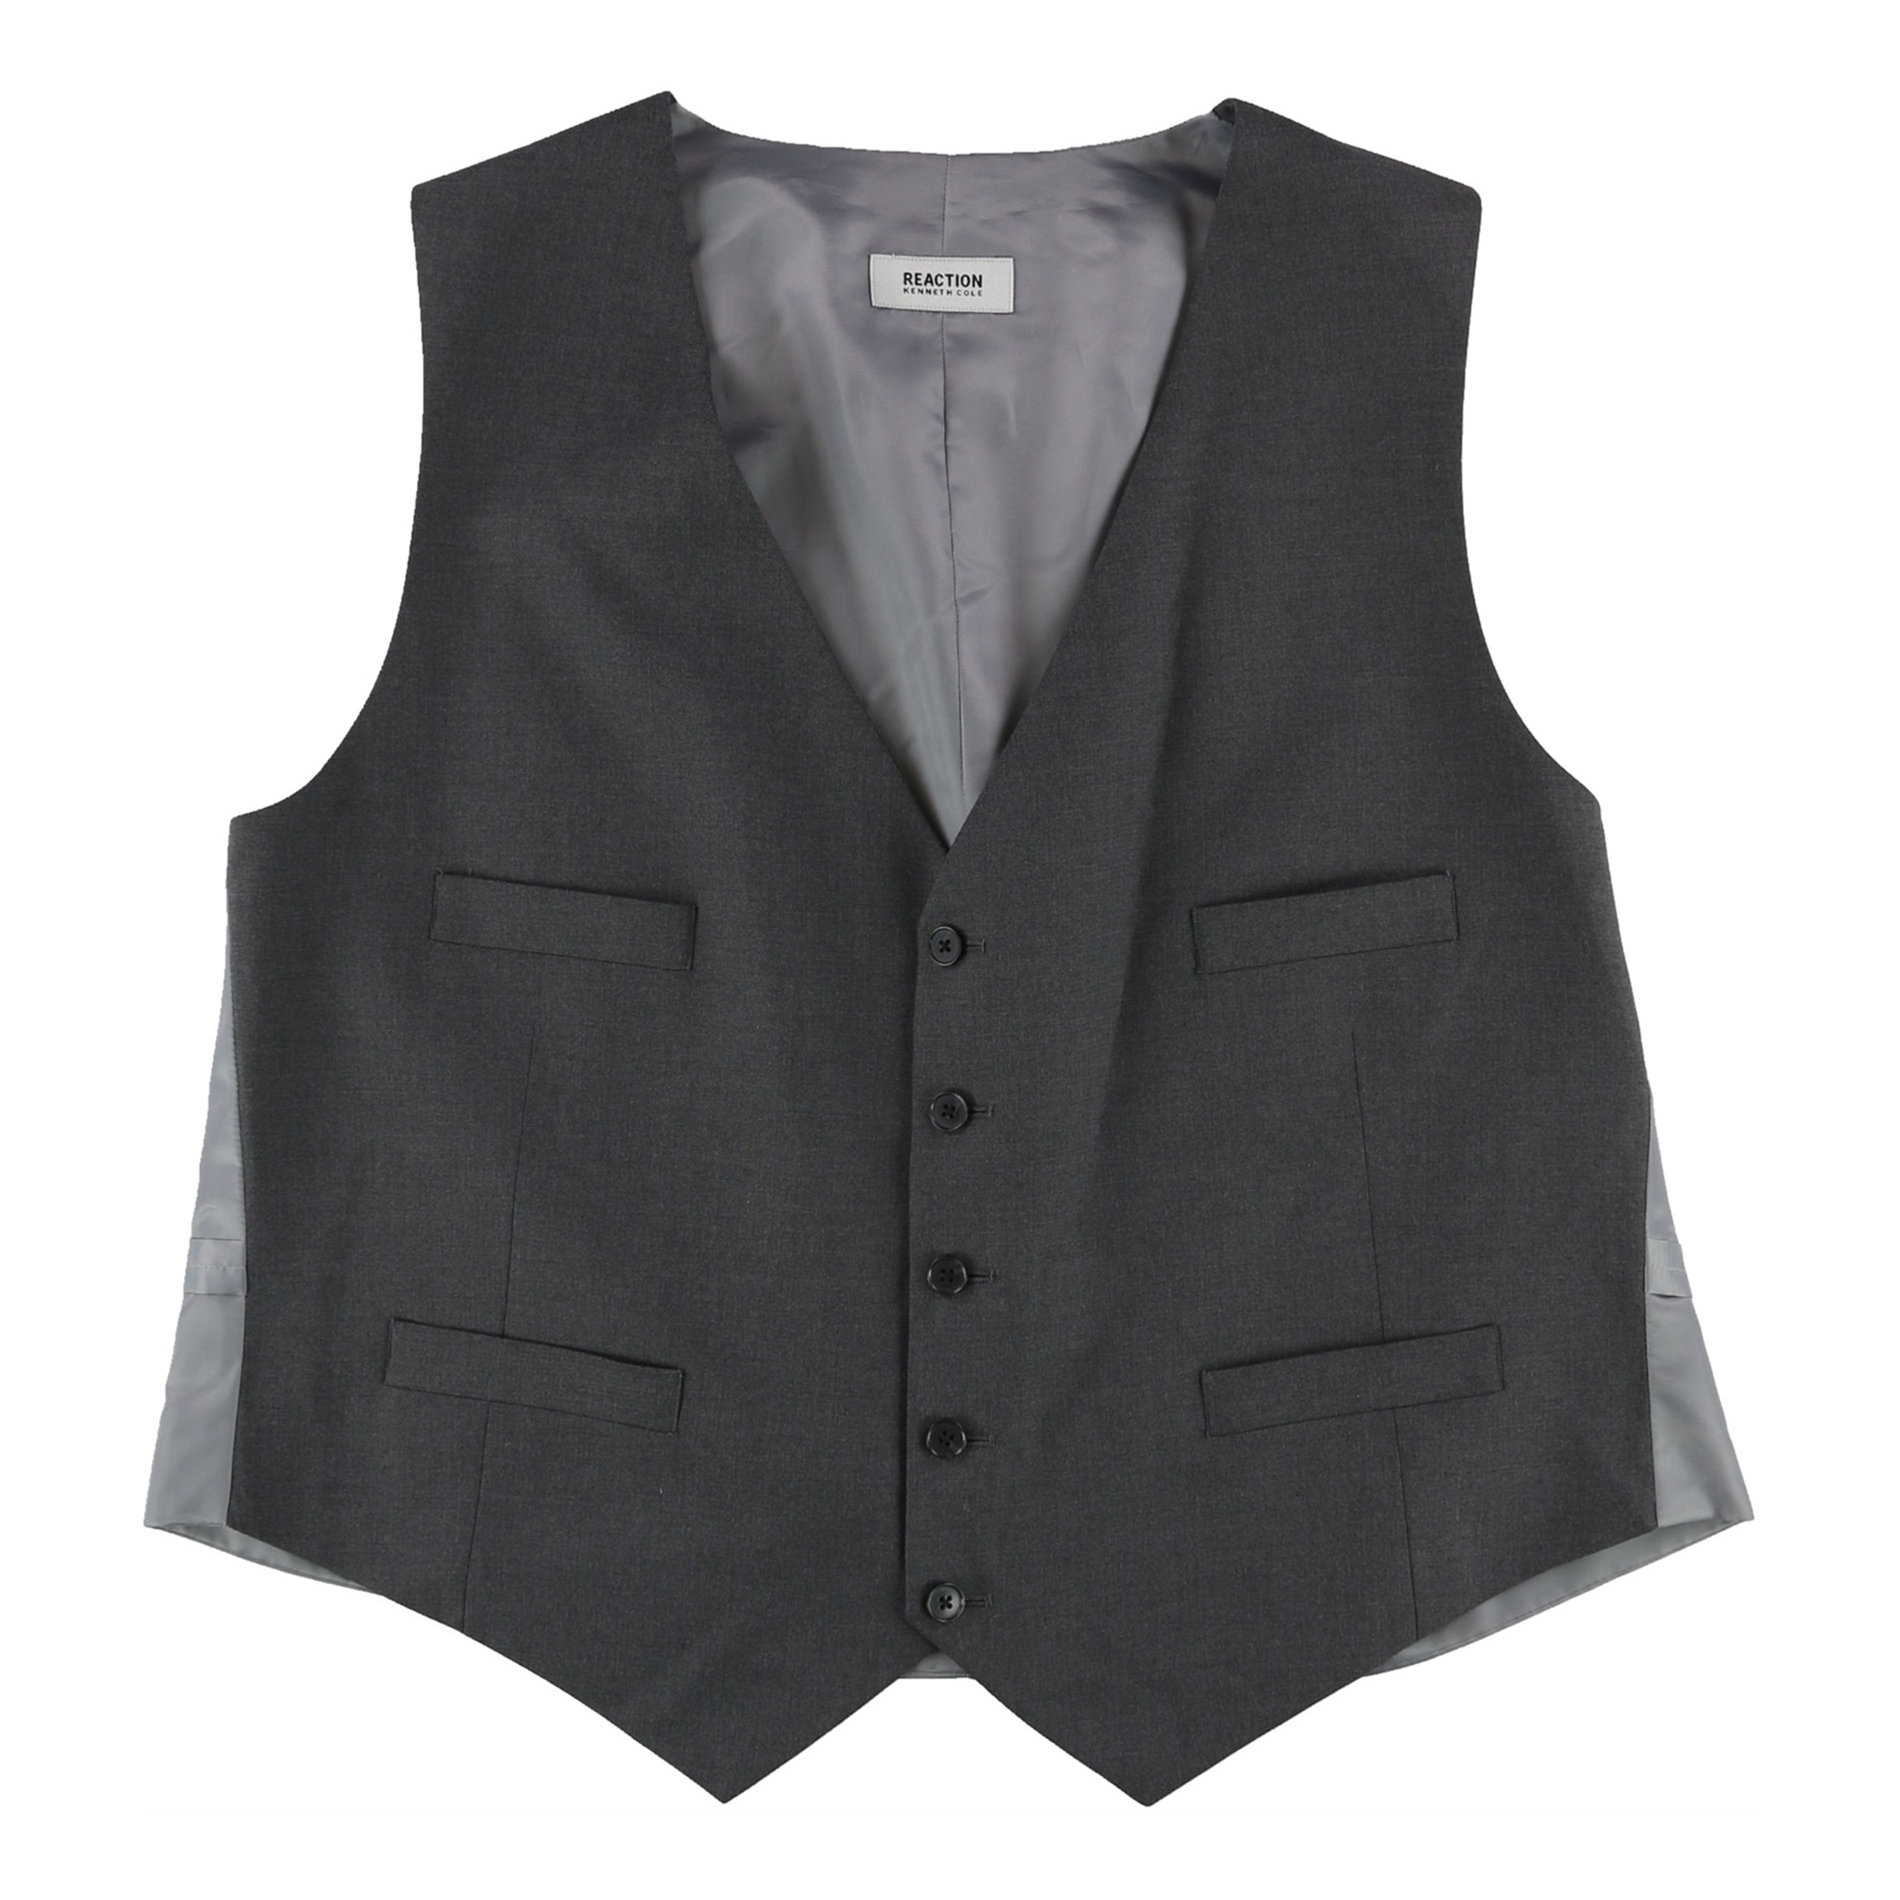 Kenneth Cole Mens Contrast Five Button Vest